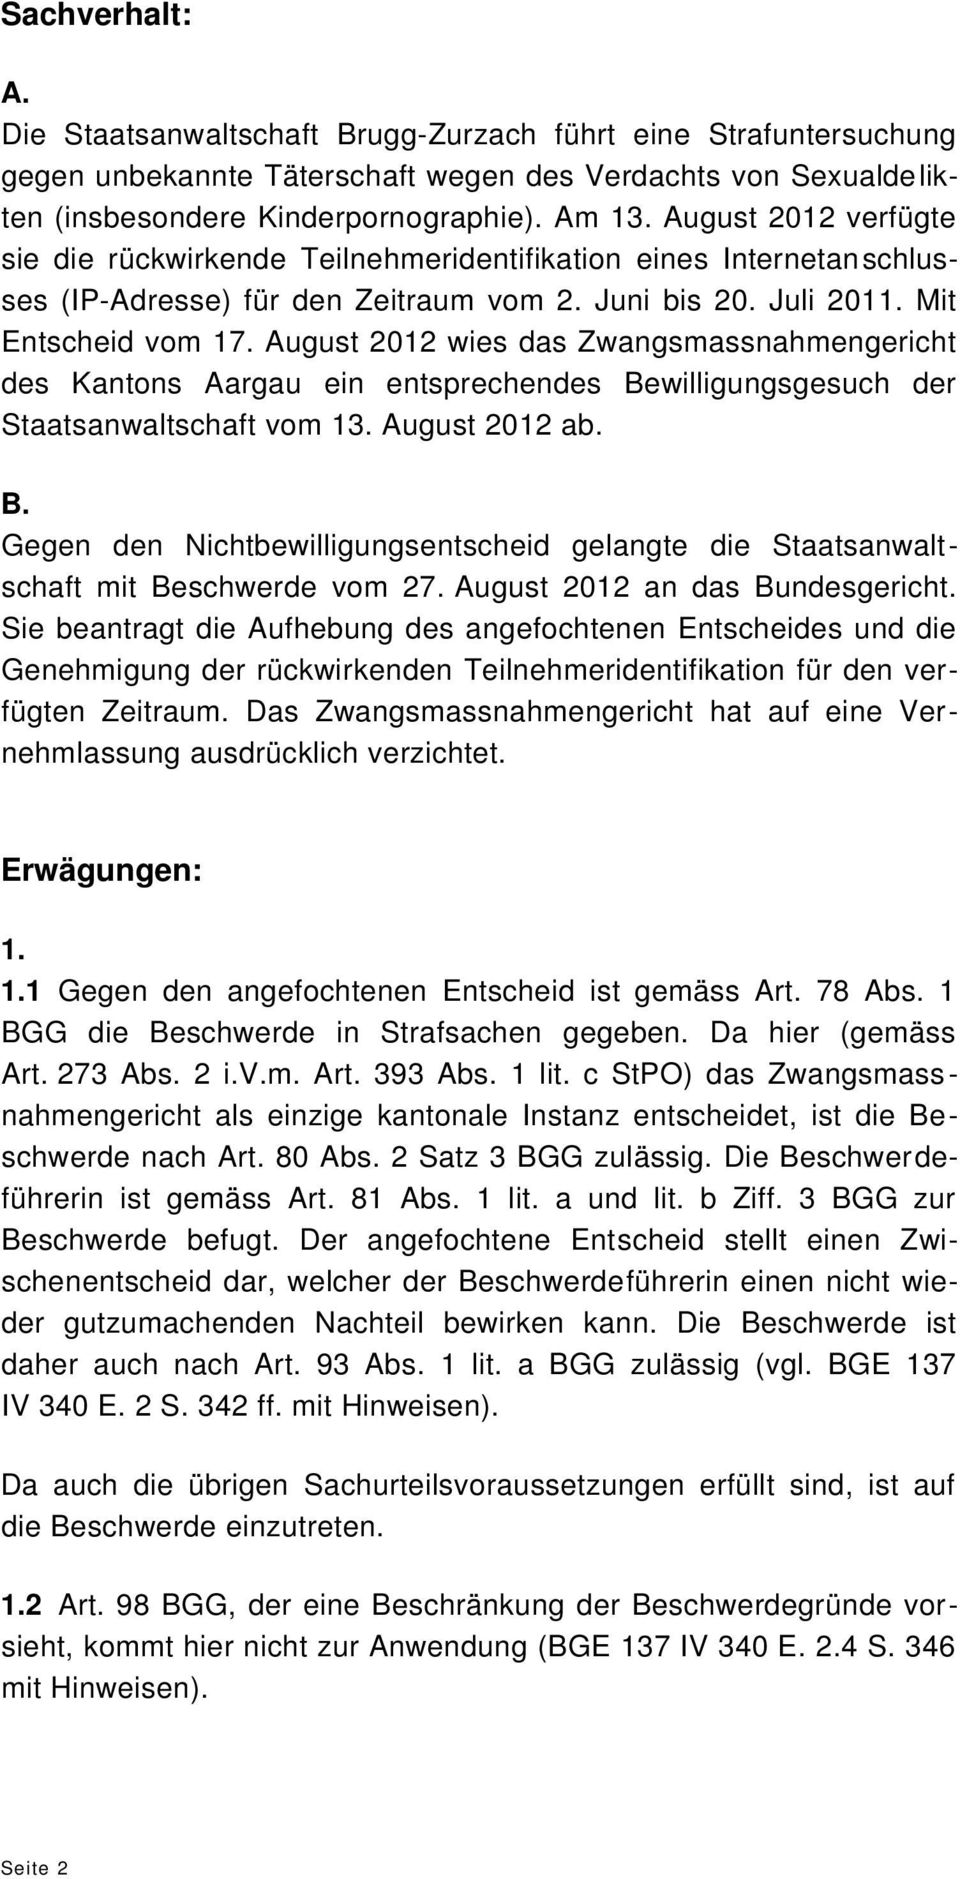 August 2012 wies das Zwangsmassnahmengericht des Kantons Aargau ein entsprechendes Bewilligungsgesuch der Staatsanwaltschaft vom 13. August 2012 ab. B. Gegen den Nichtbewilligungsentscheid gelangte die Staatsanwaltschaft mit Beschwerde vom 27.